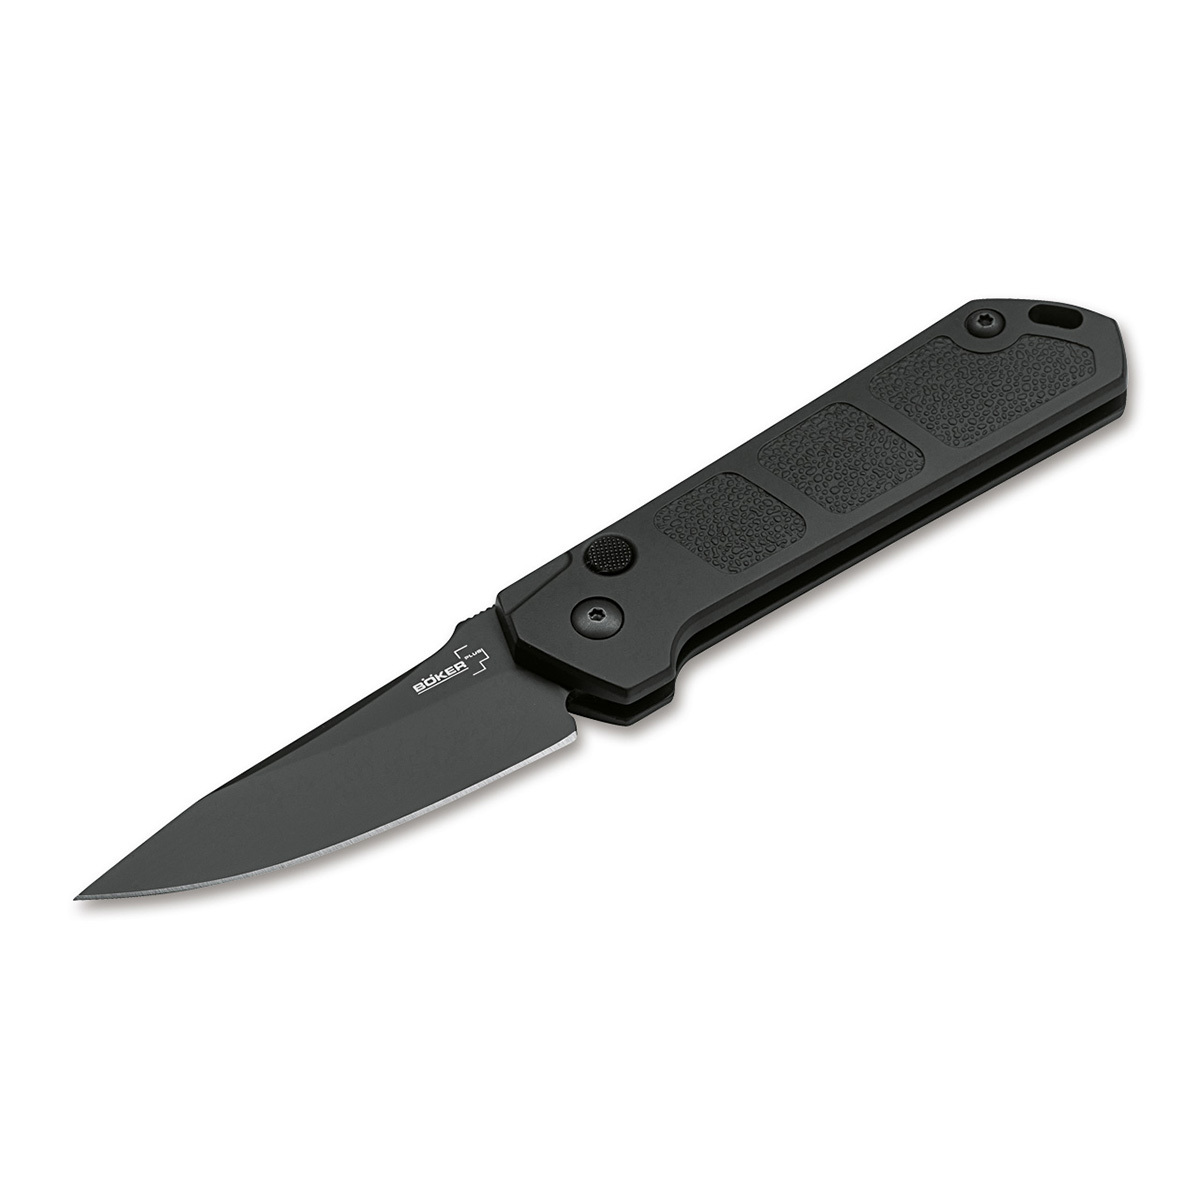 Нож автоматический складной Boker Kihon auto black, сталь AUS8, рукоять алюминий складной упор противооткатный lokhen